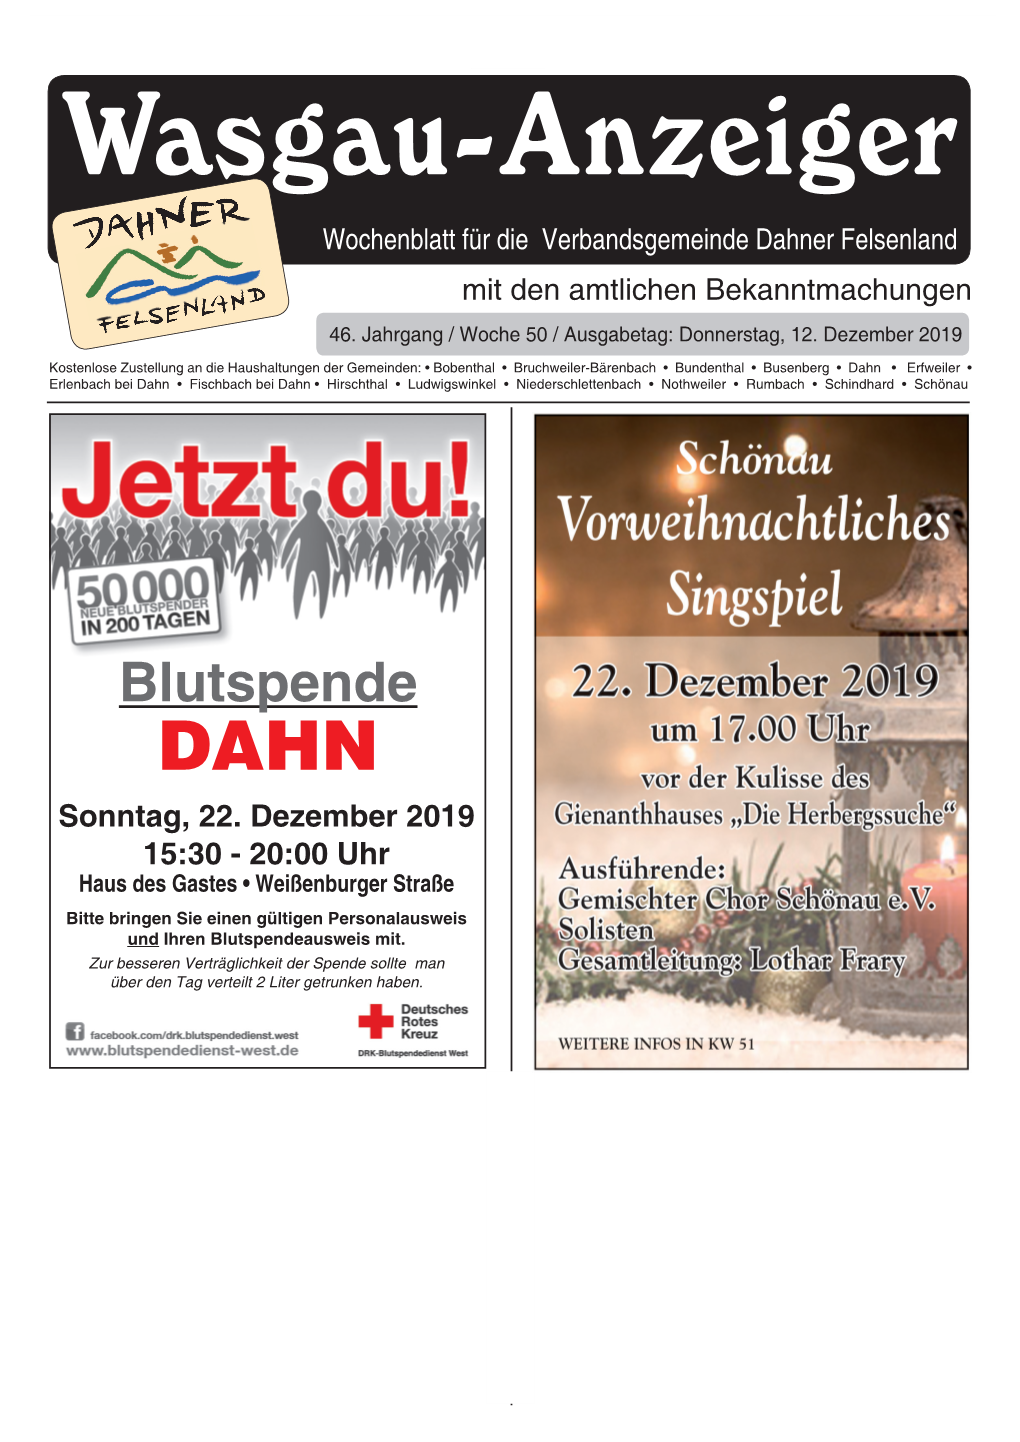 Wasgau-Anzeiger, 12. Dezember